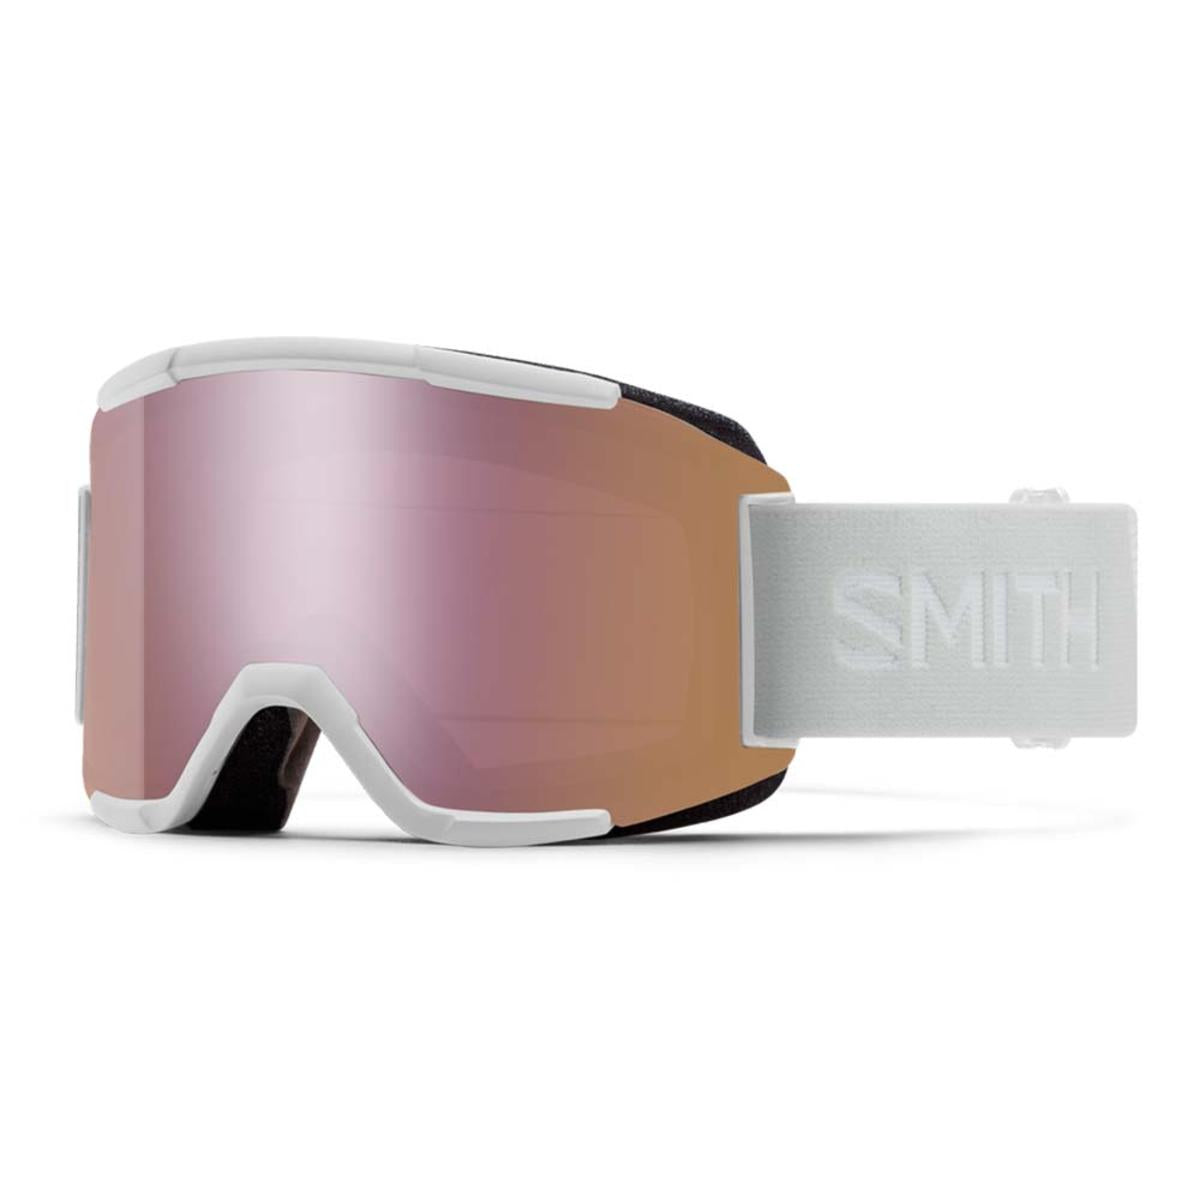 Smith Optics Squad Goggles Chromapop Everyday Rose Gold Mirror - White Vapor Frame